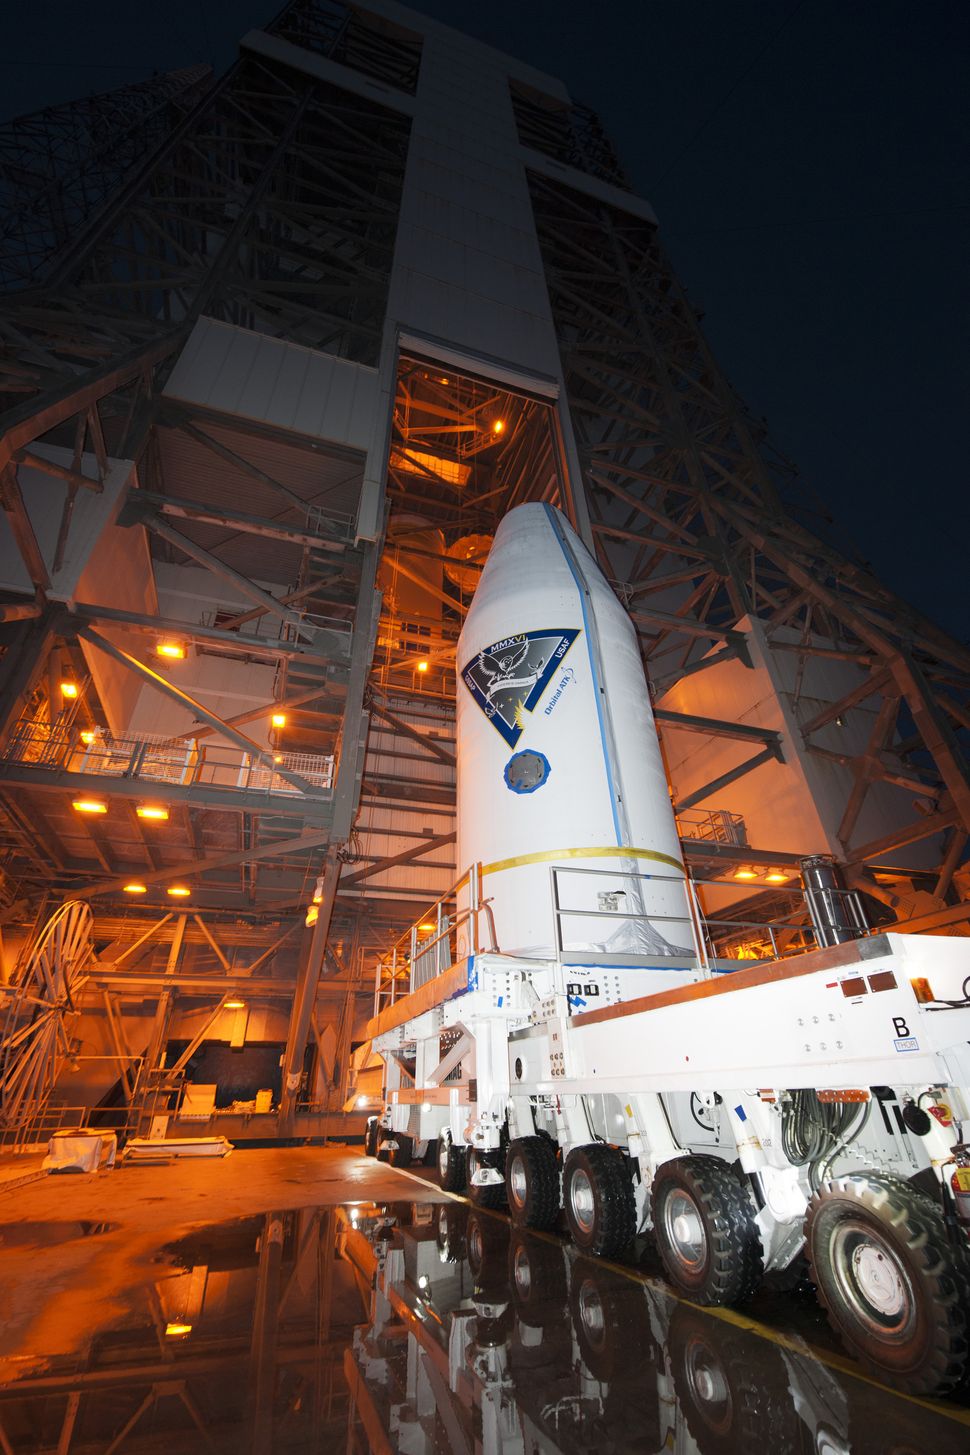 Photos: Air Force Launches 2 GSSAP Surveillance Satellites | Space